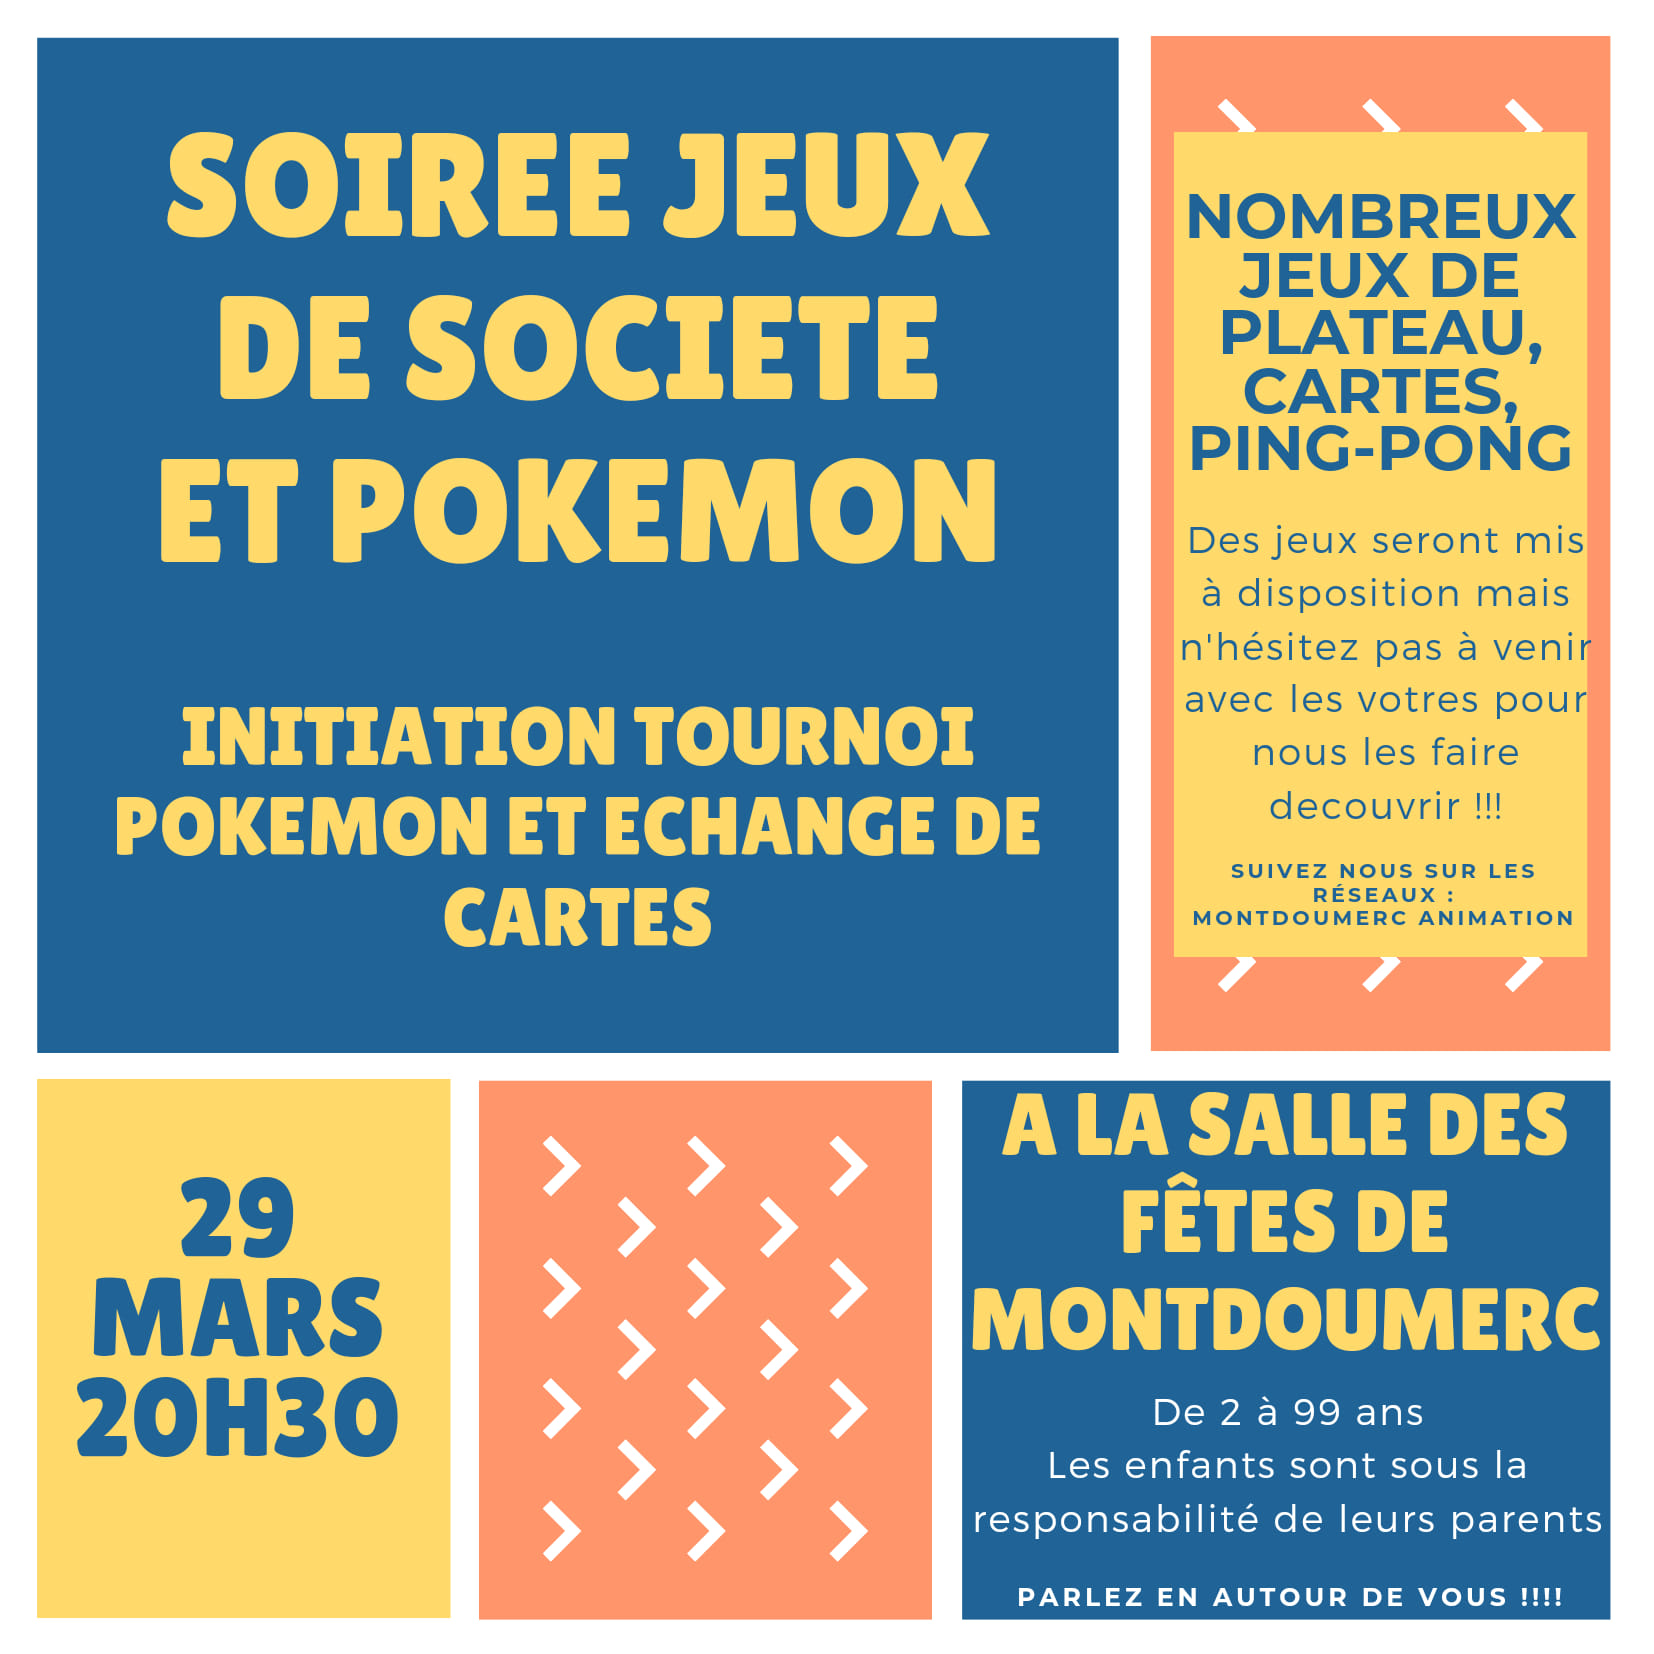 Soirée jeux de société et Pokemon à Montdoumerc null France null null null null